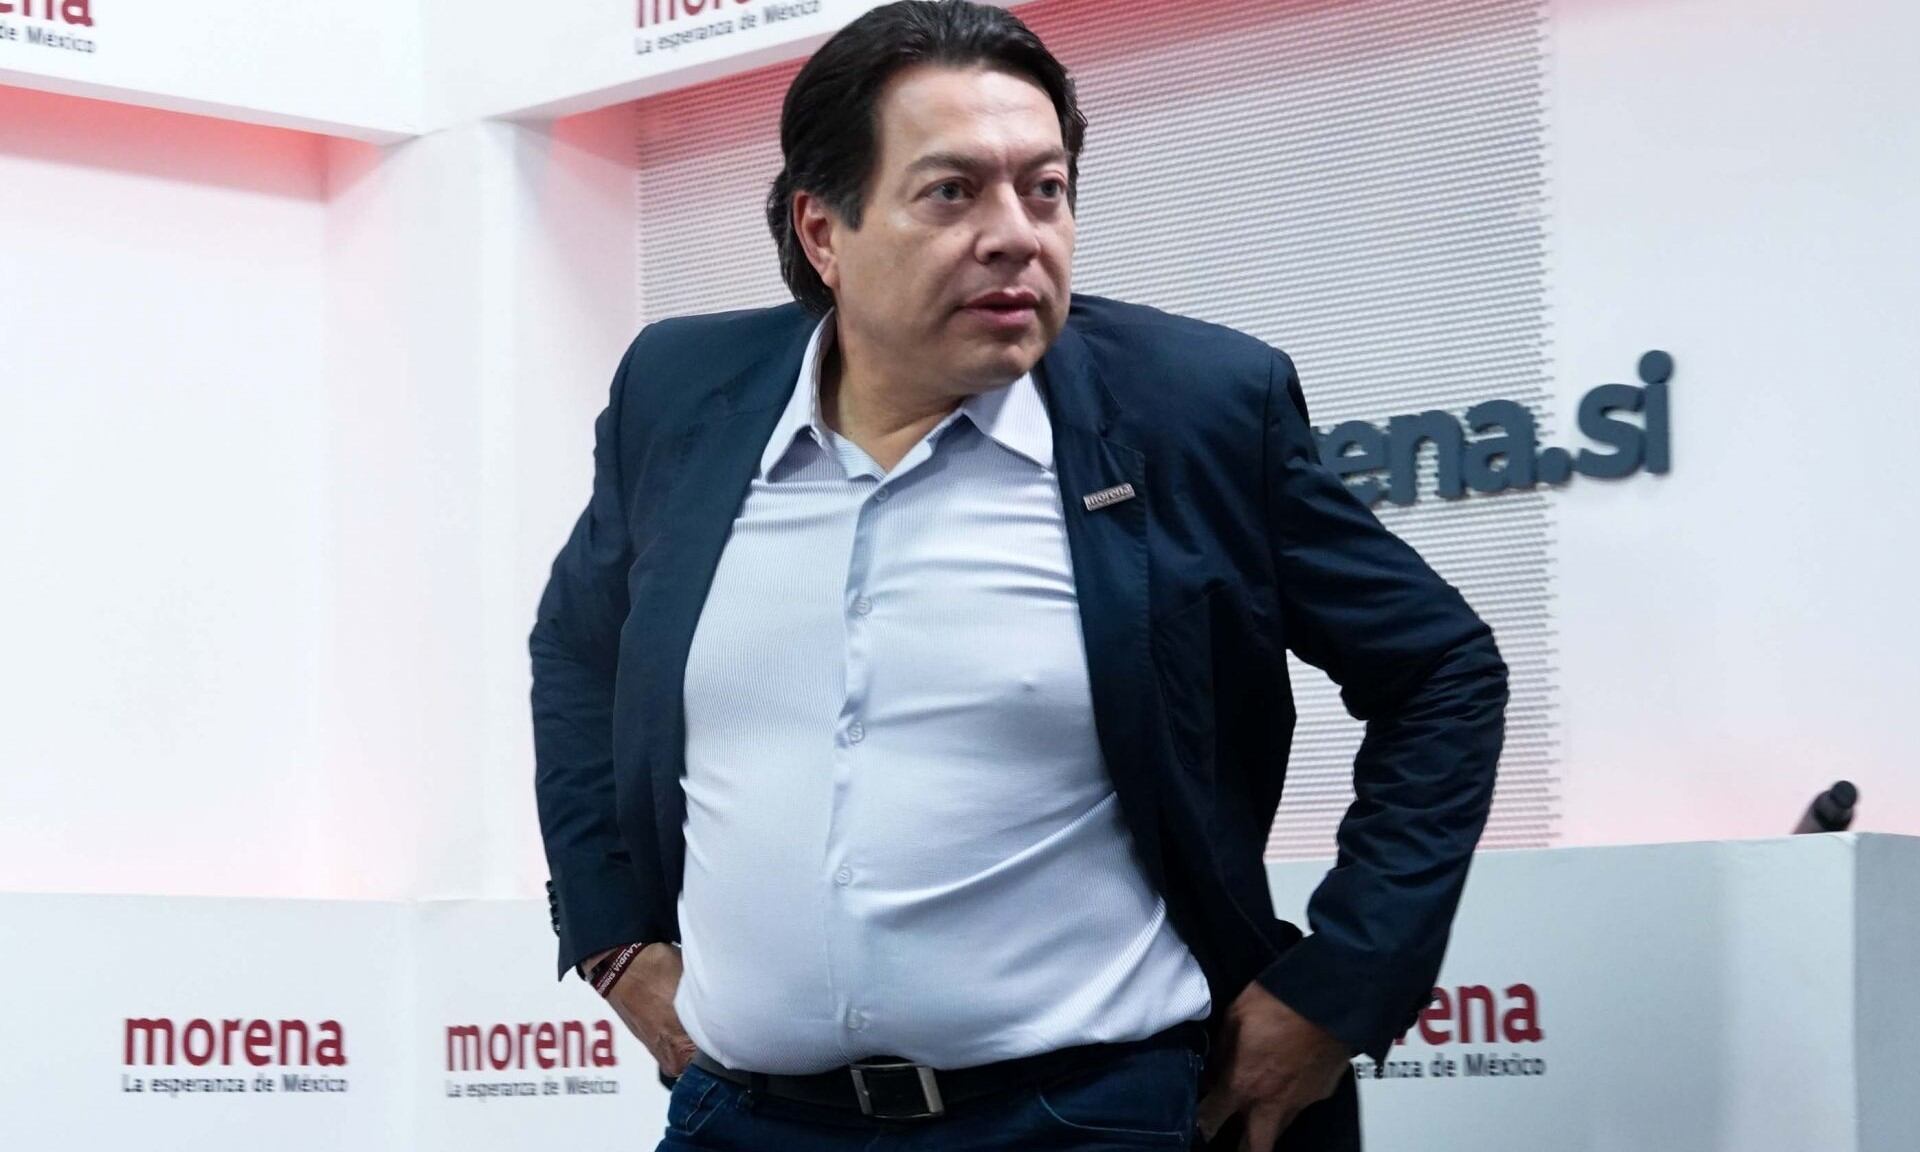 Mario Delgado, presidente nacional de Morena